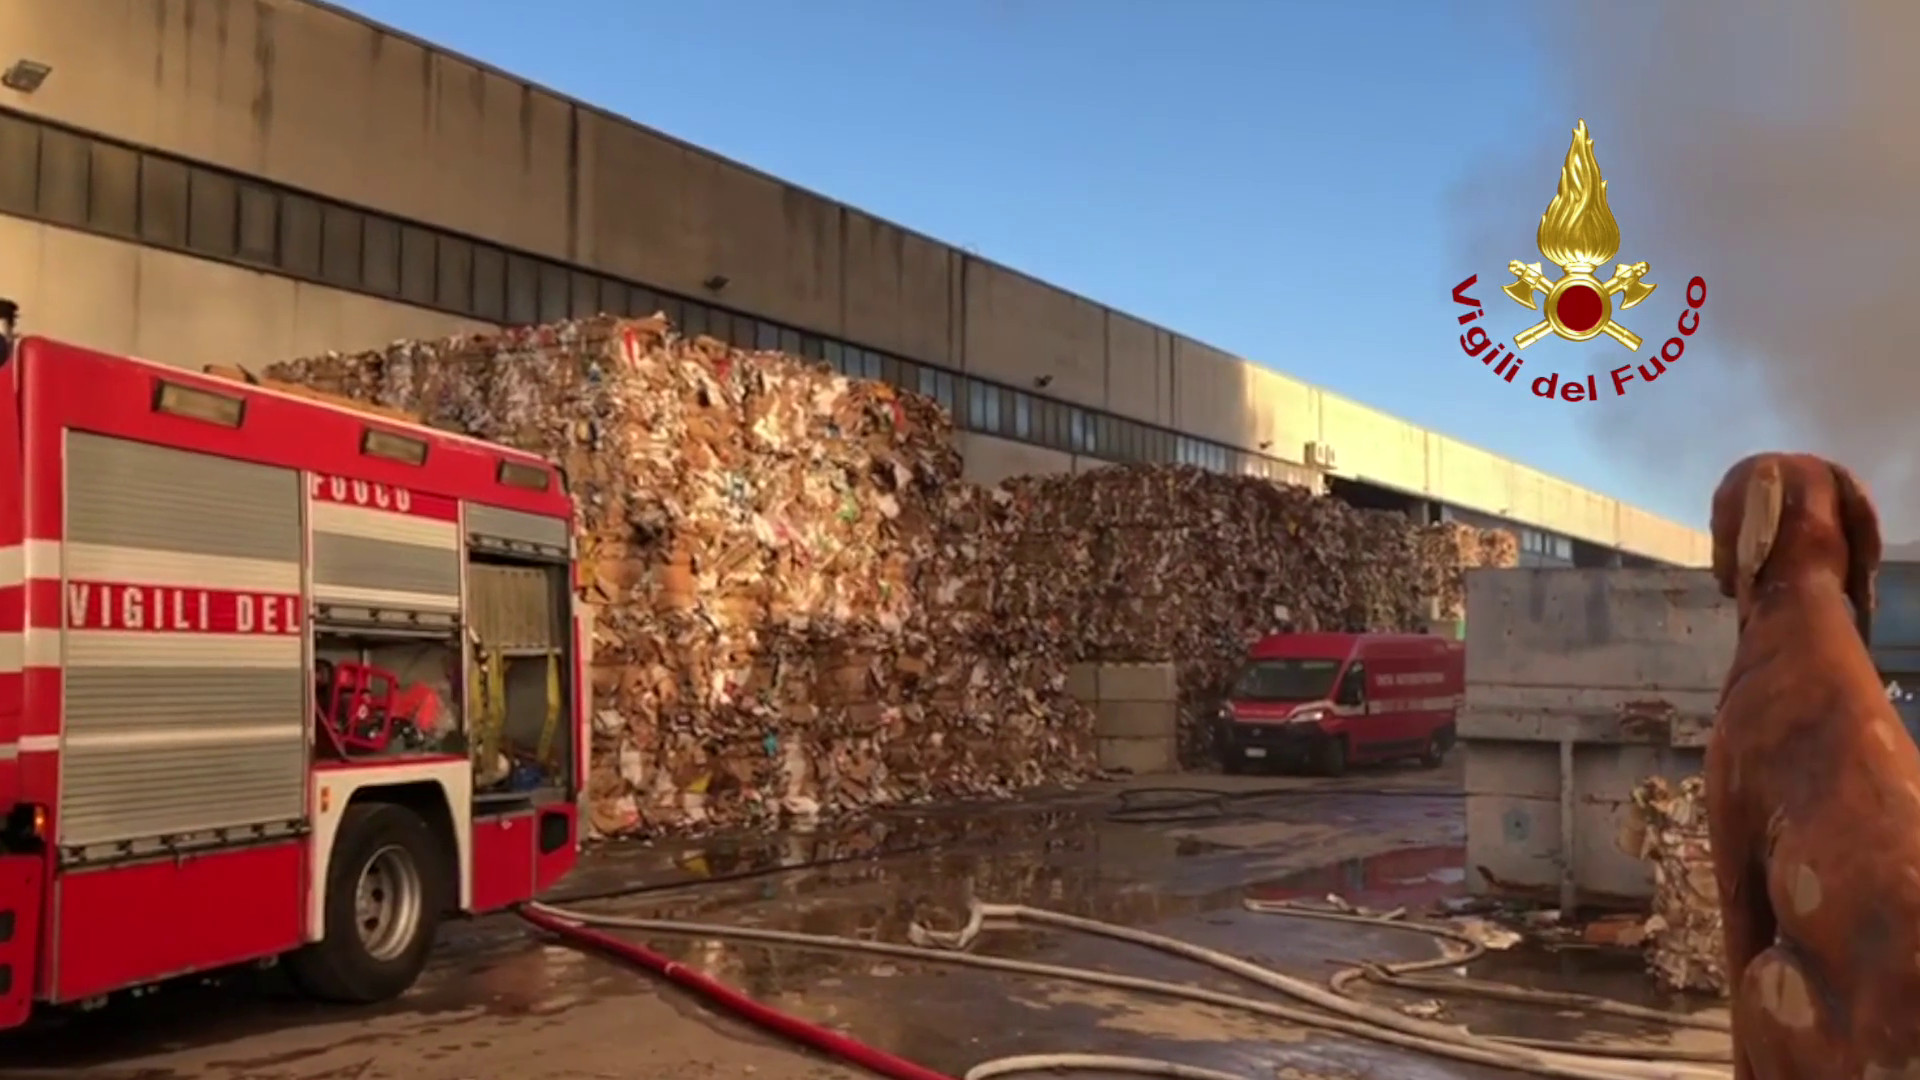 Incendio in un’azienda di rifiuti nel napoletano, le immagini